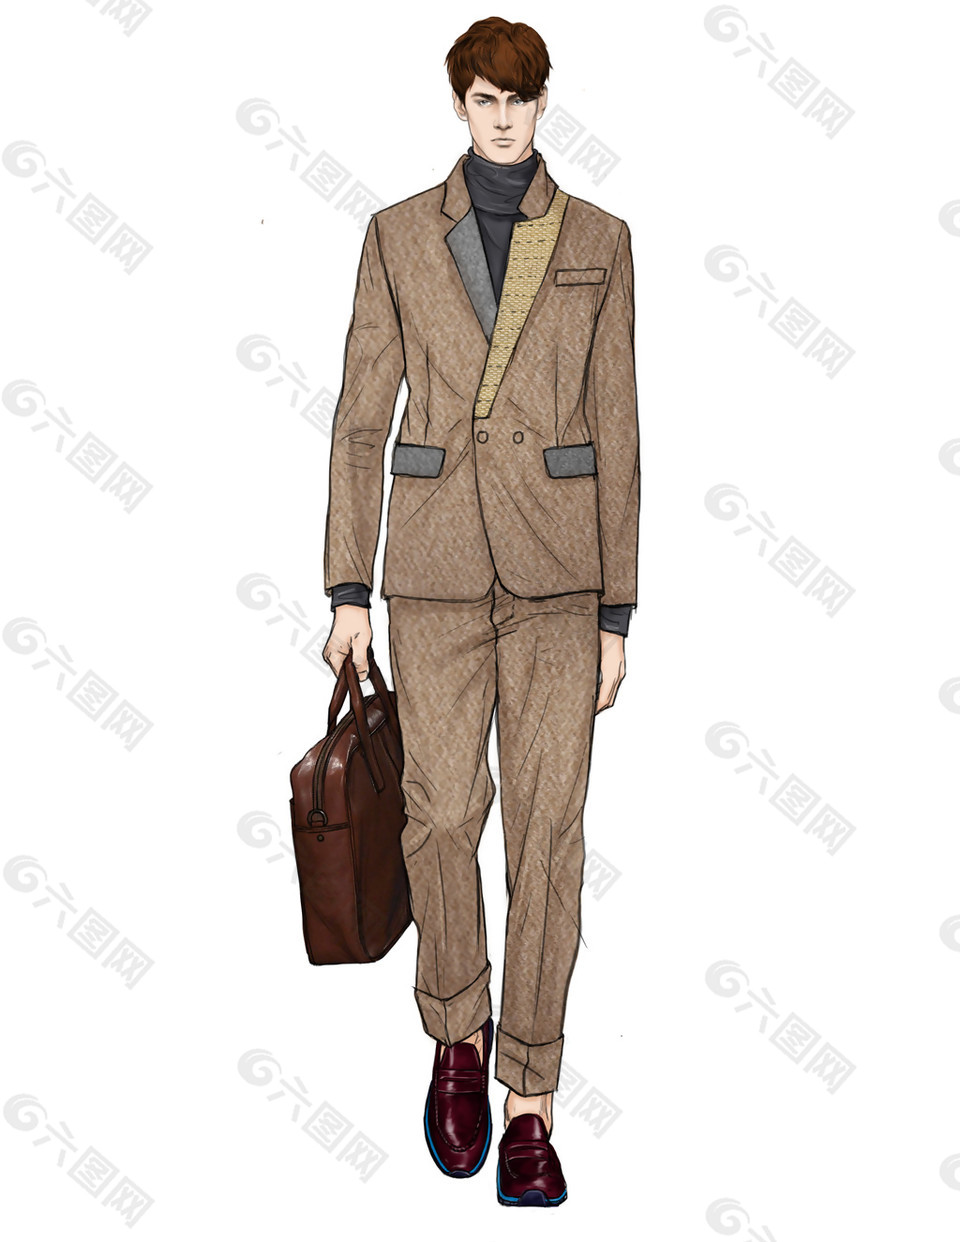 时尚浅褐色西装外套男装效果图